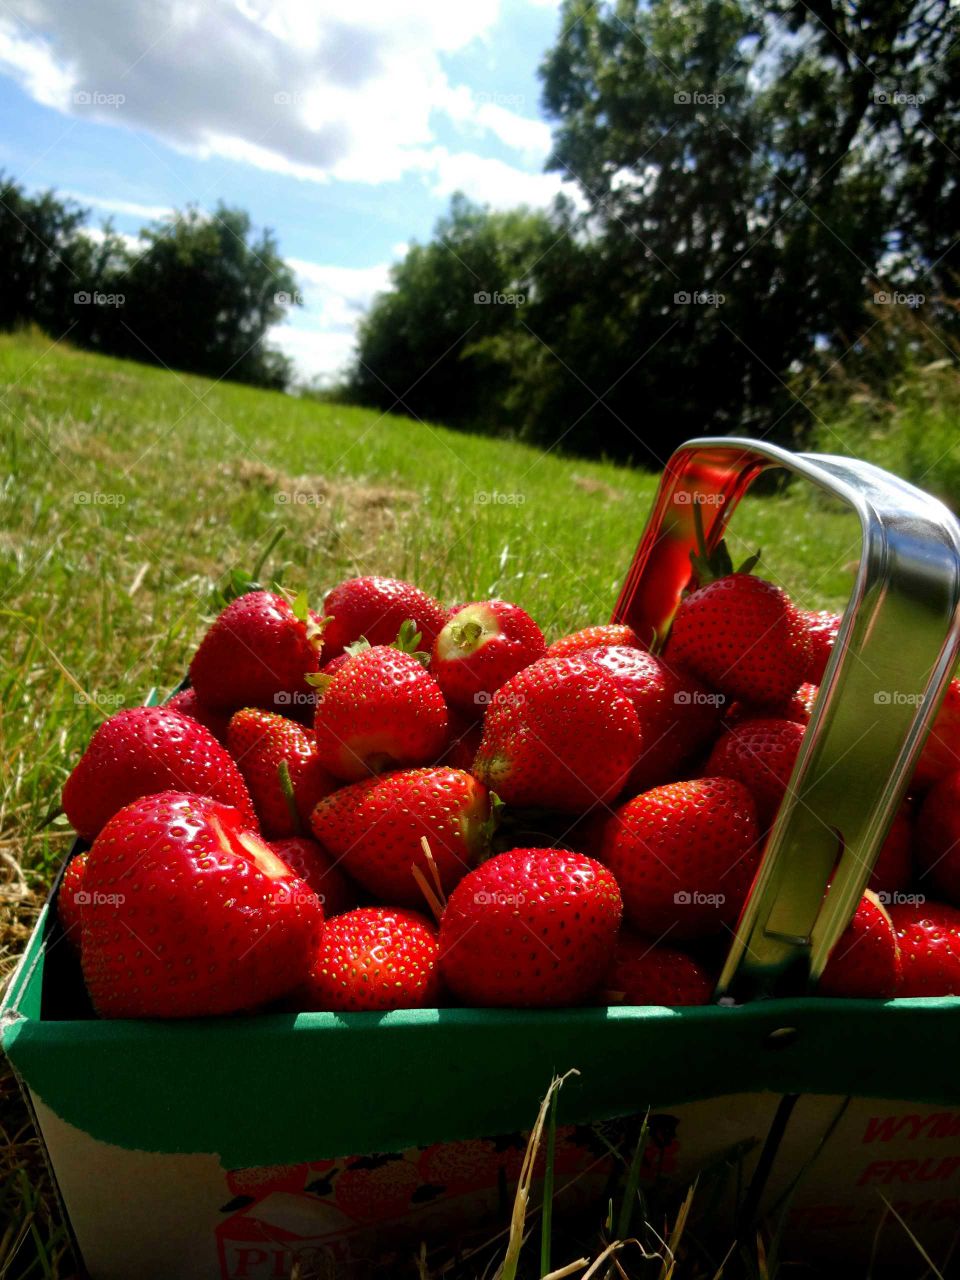 strawberries. basket of vitamins